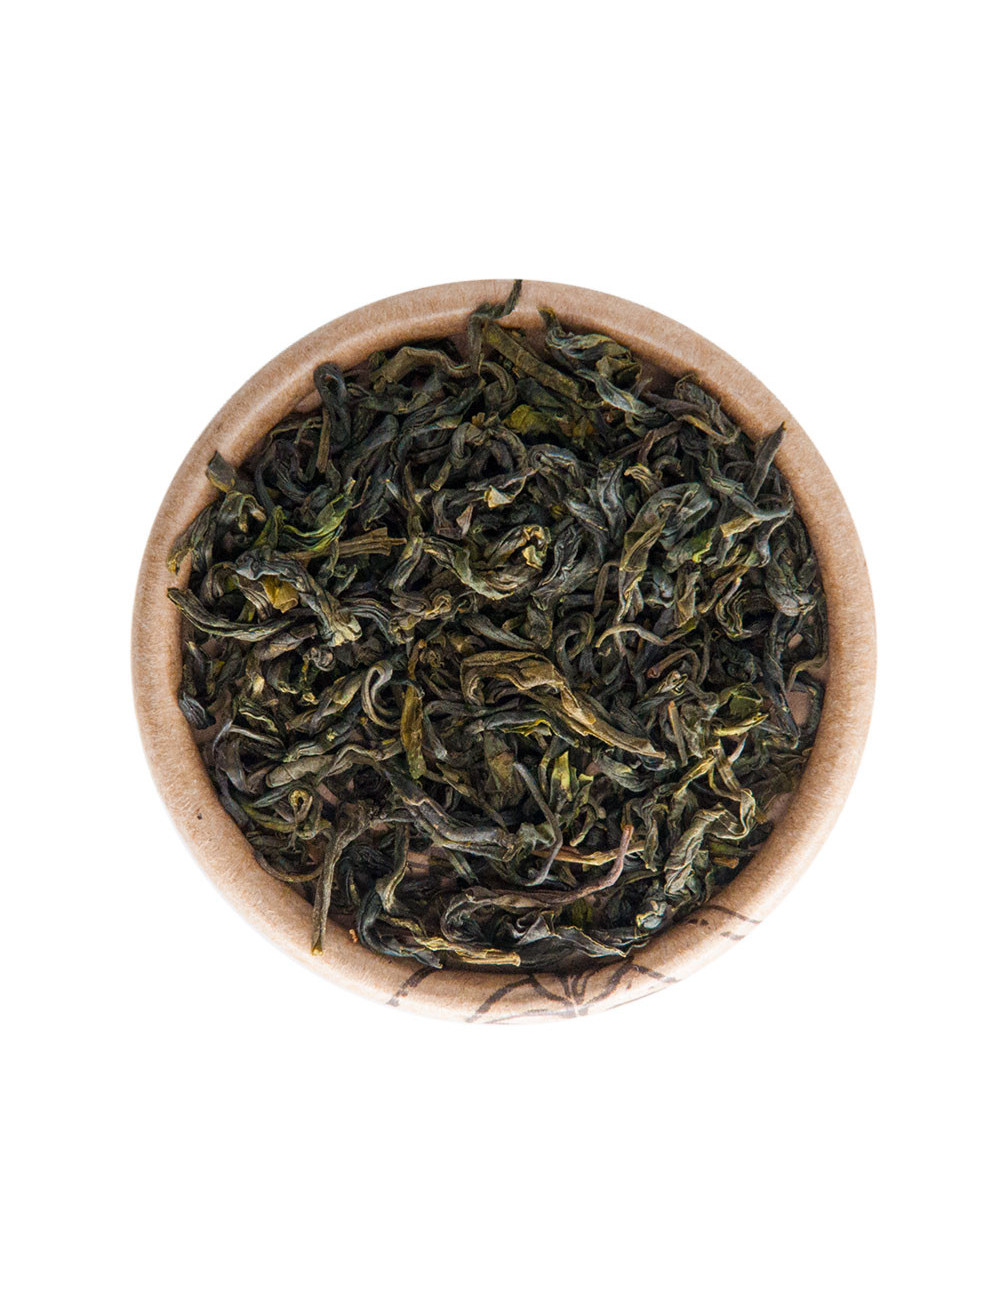 Fog tea superior BIO tè verde - La Pianta del Tè shop online